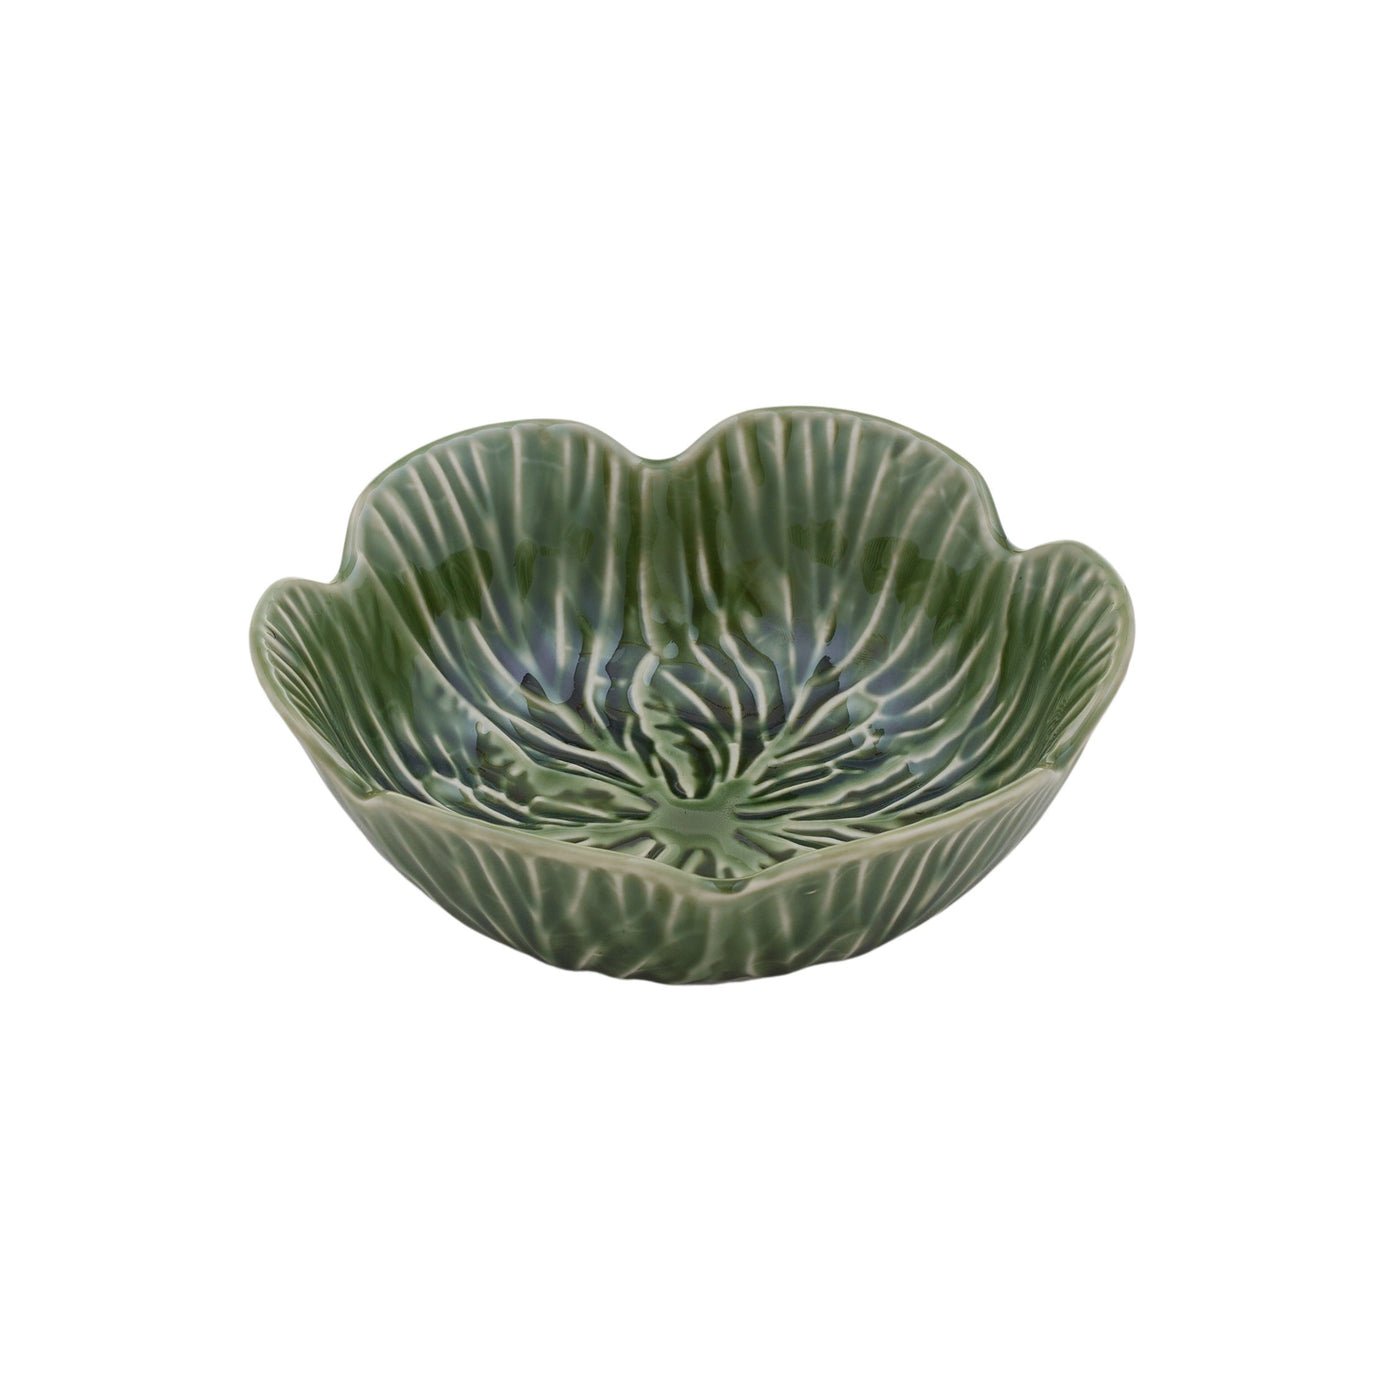 Cabbage Ceramic Bowl Green - Medium